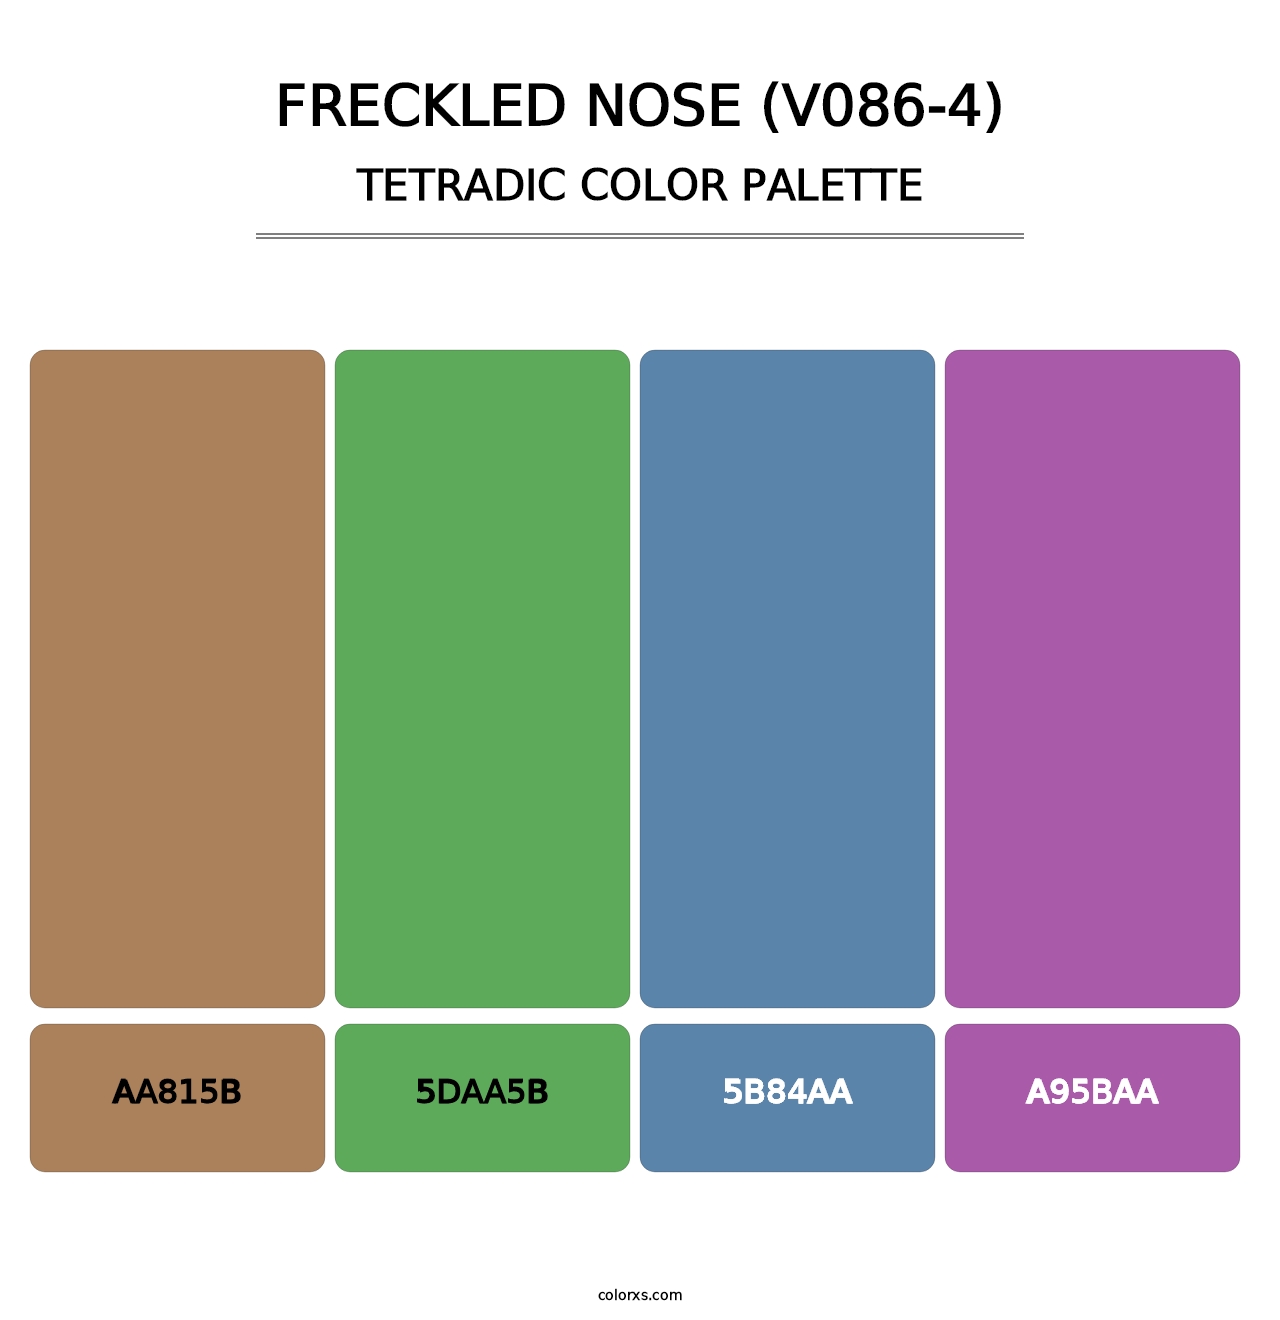 Freckled Nose (V086-4) - Tetradic Color Palette